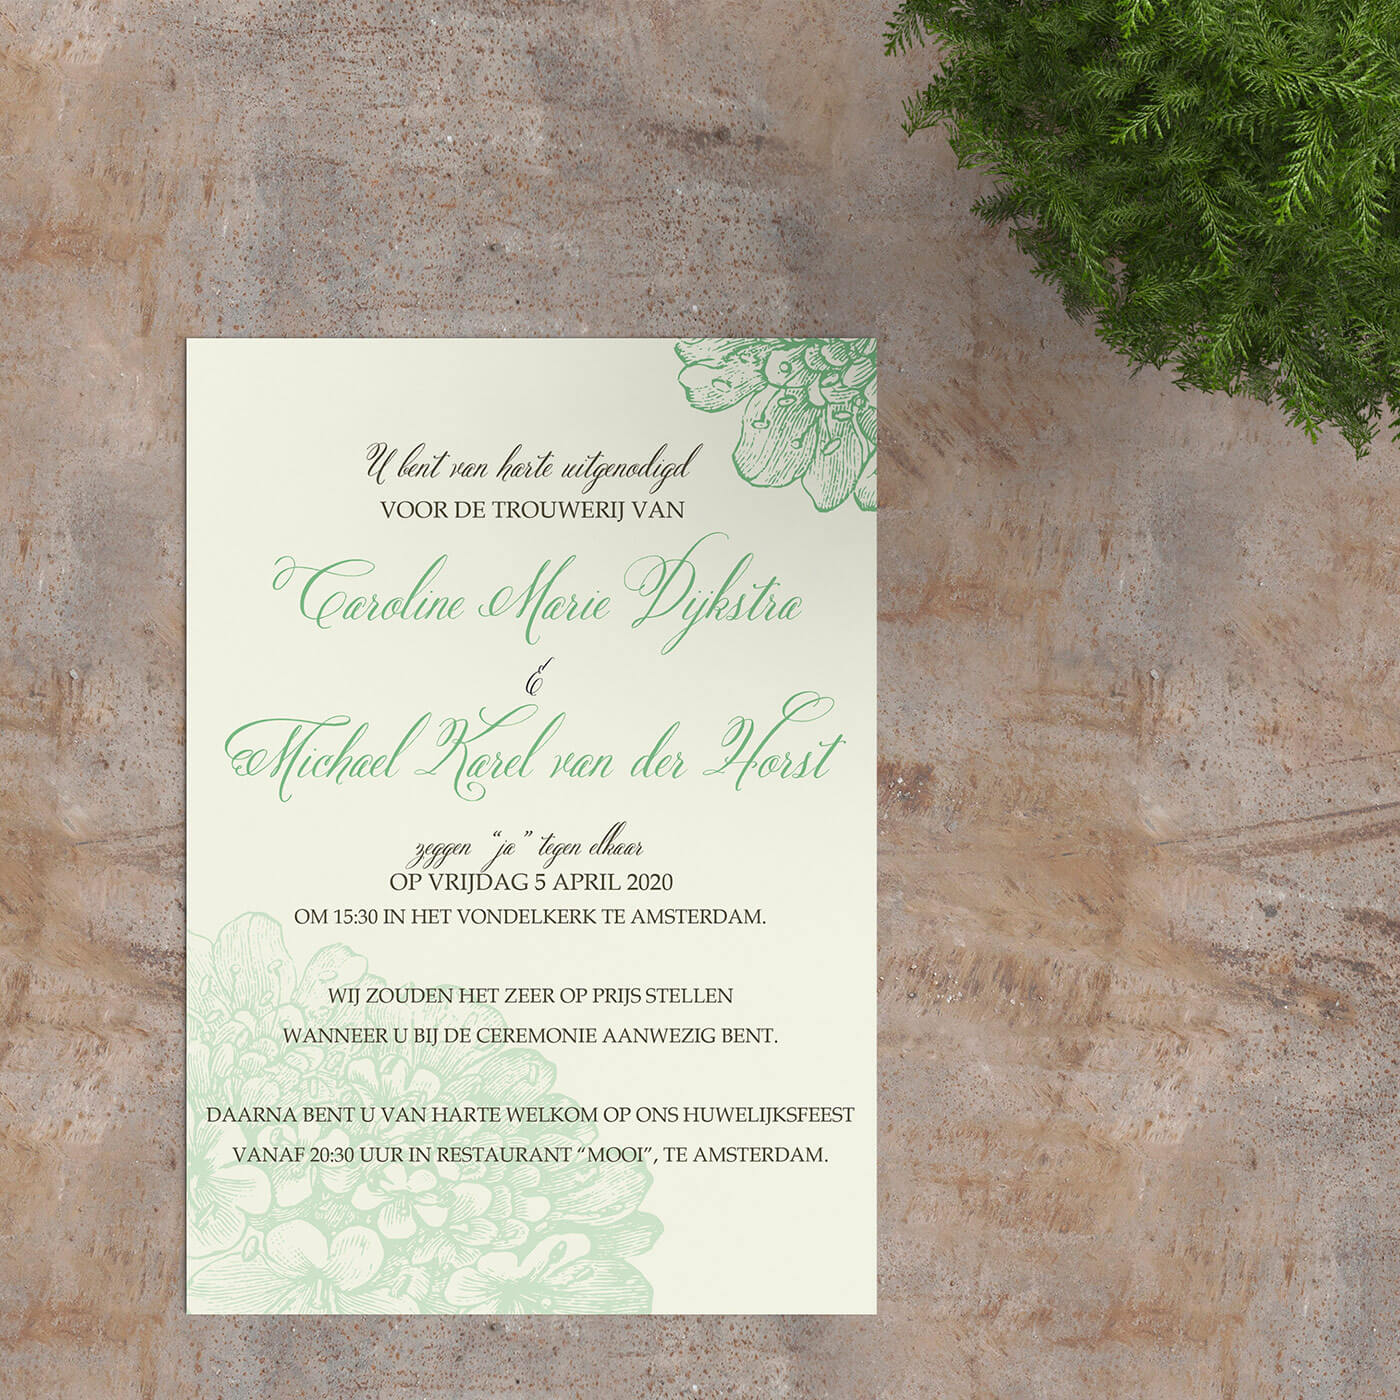 Trouwkaart Klassieke Bloesems is een vintage ontwerp met groene bloemen, lichtgroene achtergrond en groene accentkleur voor de tekst.